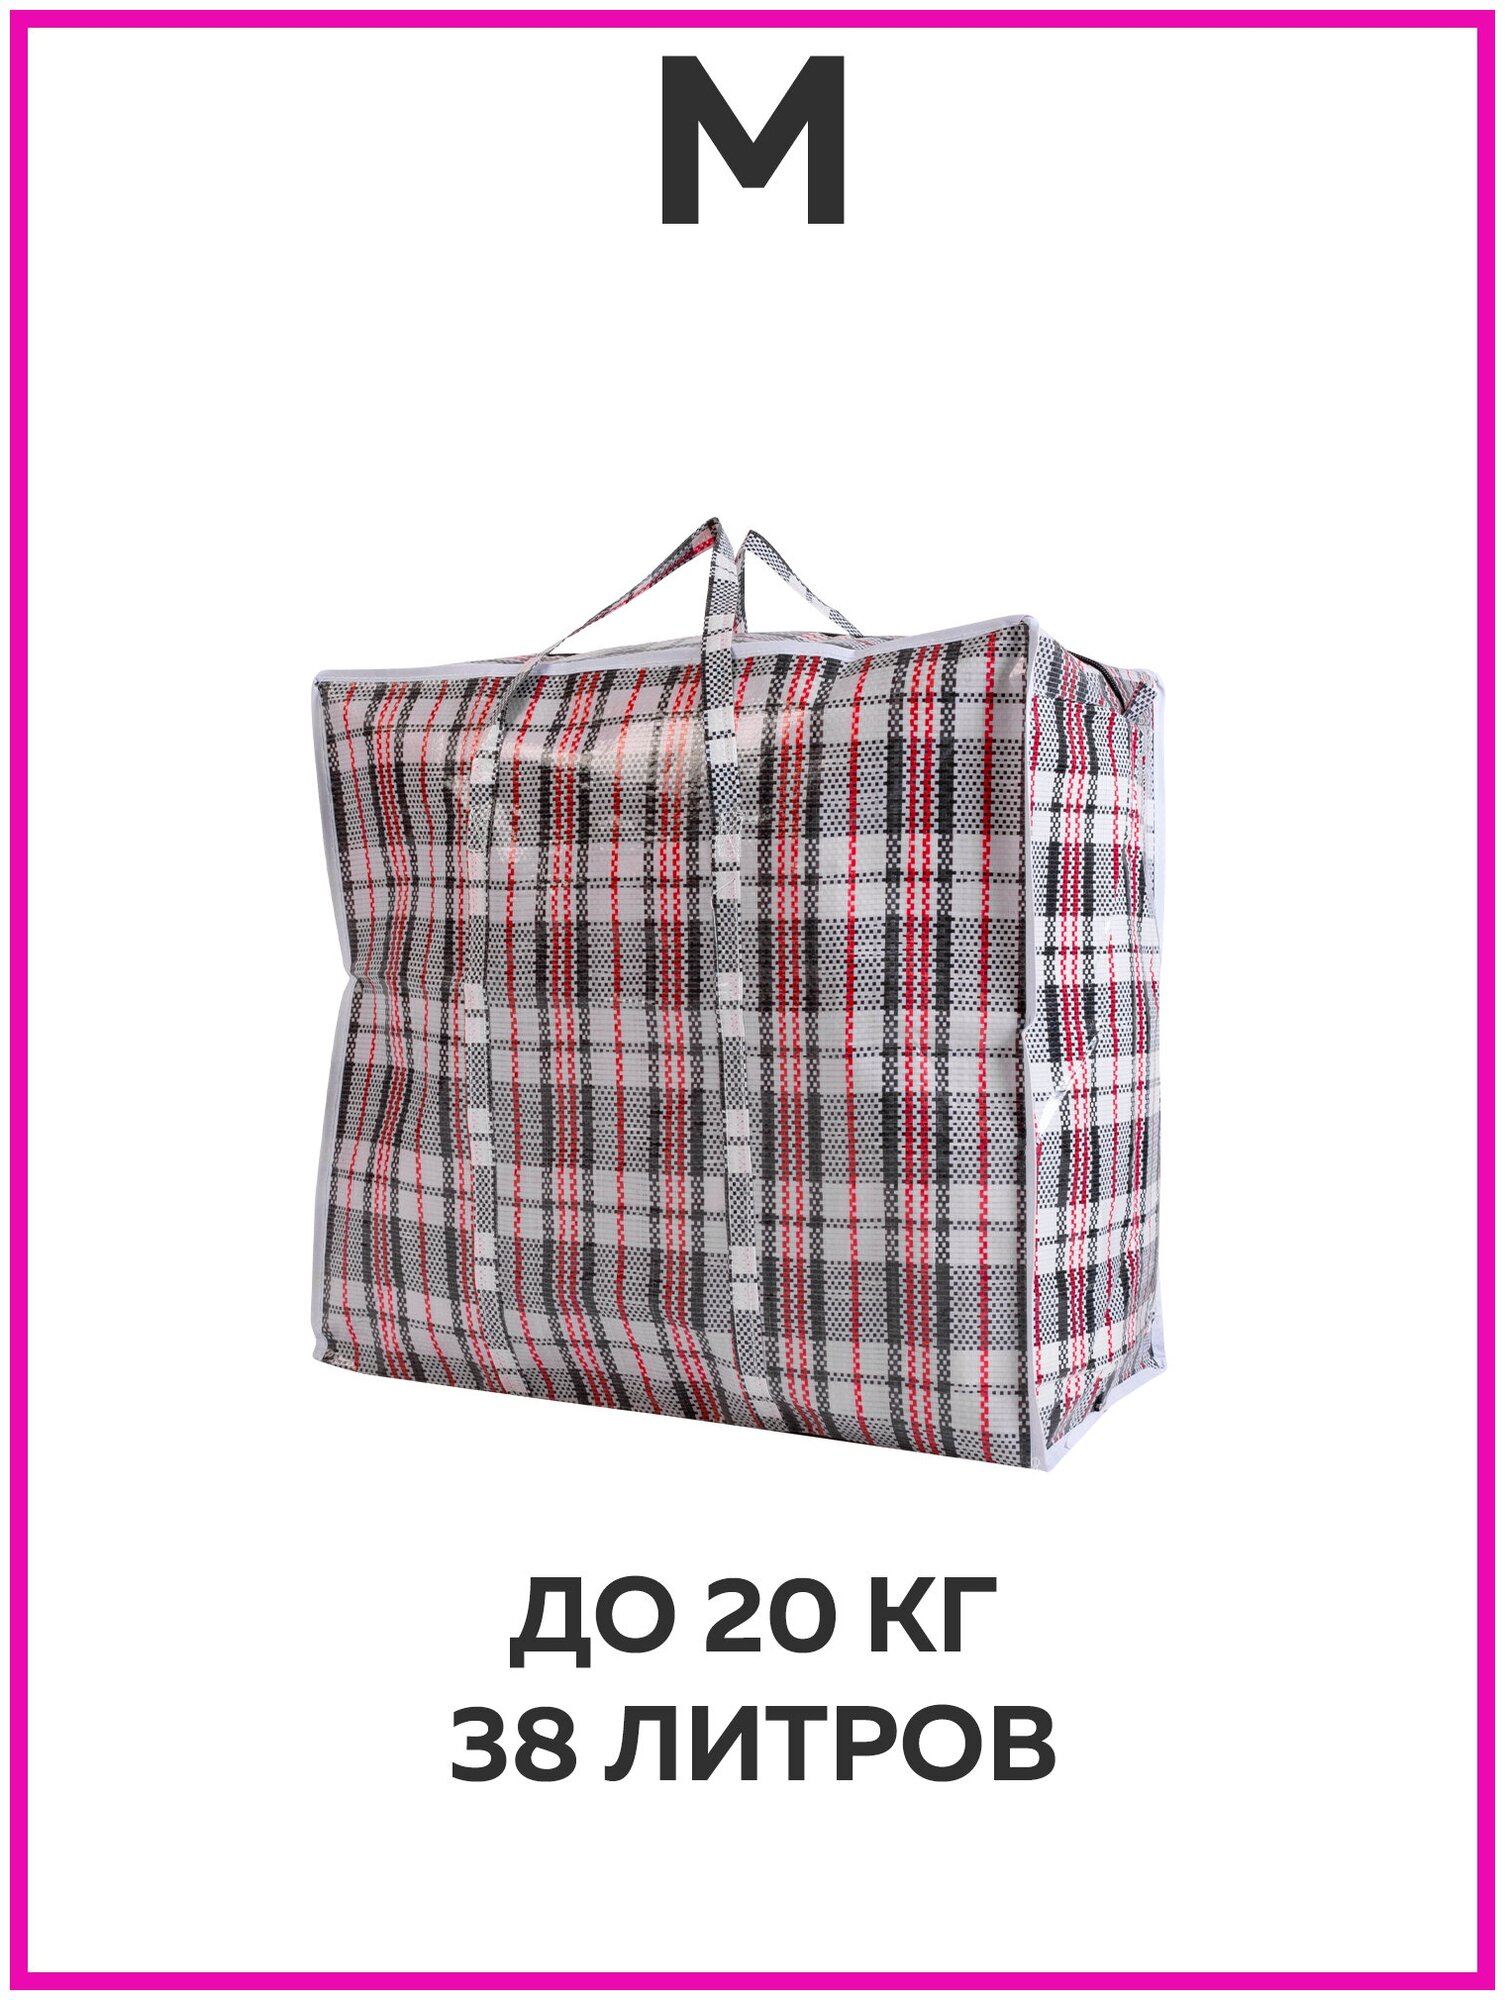 Сумка хозяйственная на молнии, Хозяйственная сумка баул, сумка для переезда большая, дорожная, китайская, челночная, клетчатая, полипропиленновая - фотография № 2